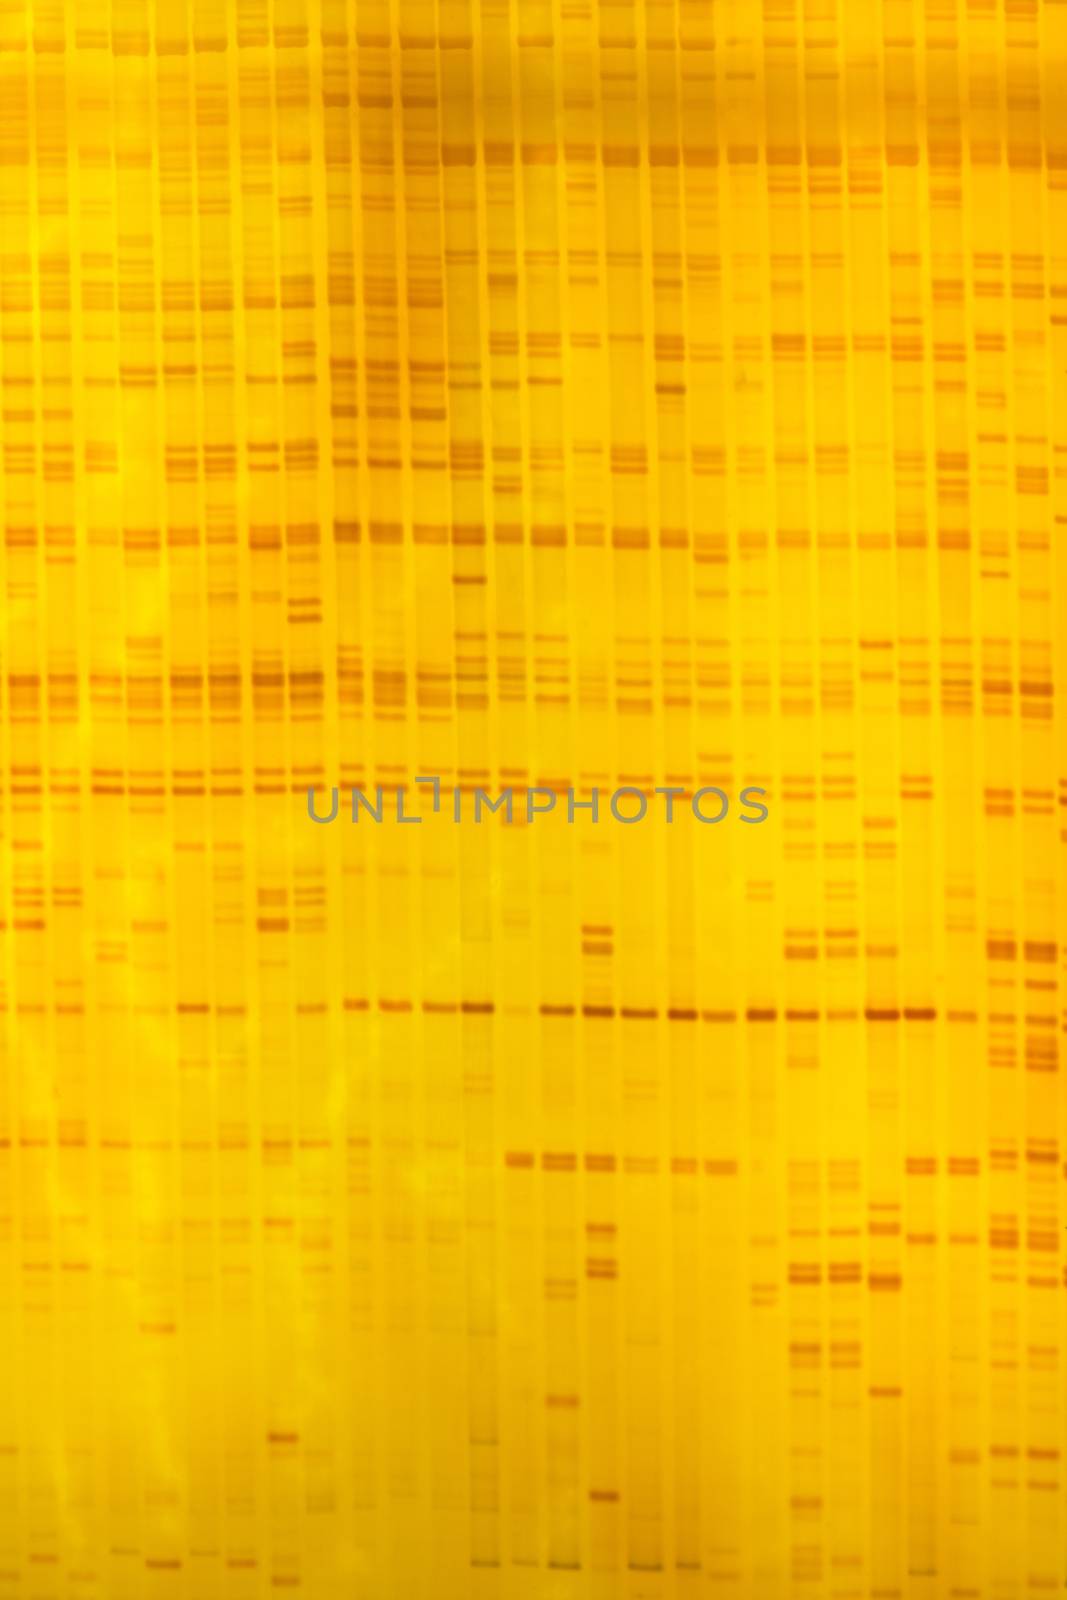 Plant DNA fingerprint on acrylamine gel electrophoresis result